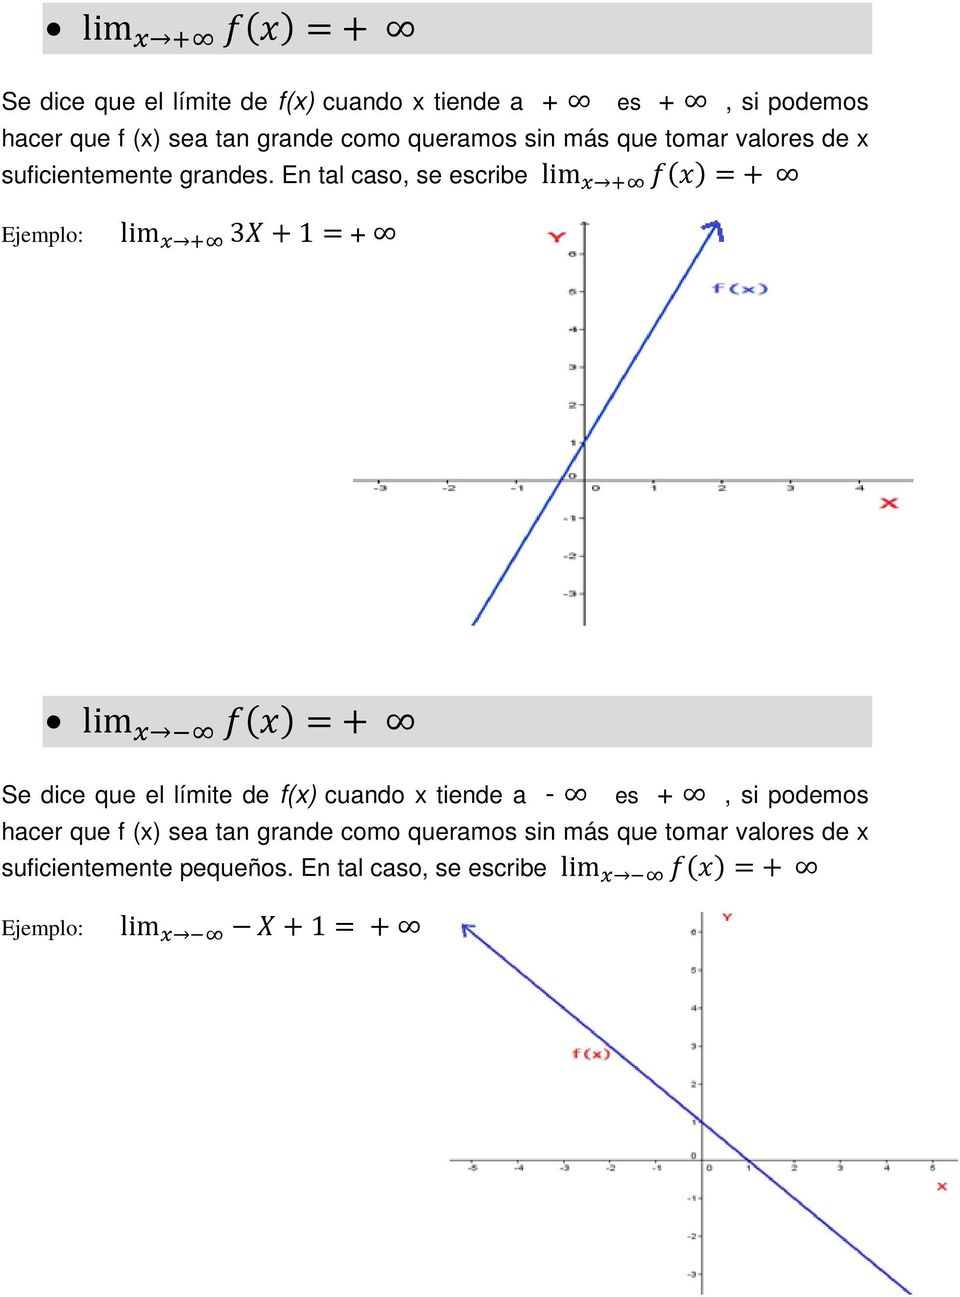 En tal caso, se escribe lim x + f(x) = + Ejemplo: lim x + 3X + 1 = + lim x f(x) = + Se dice que el límite de f(x) cuando x